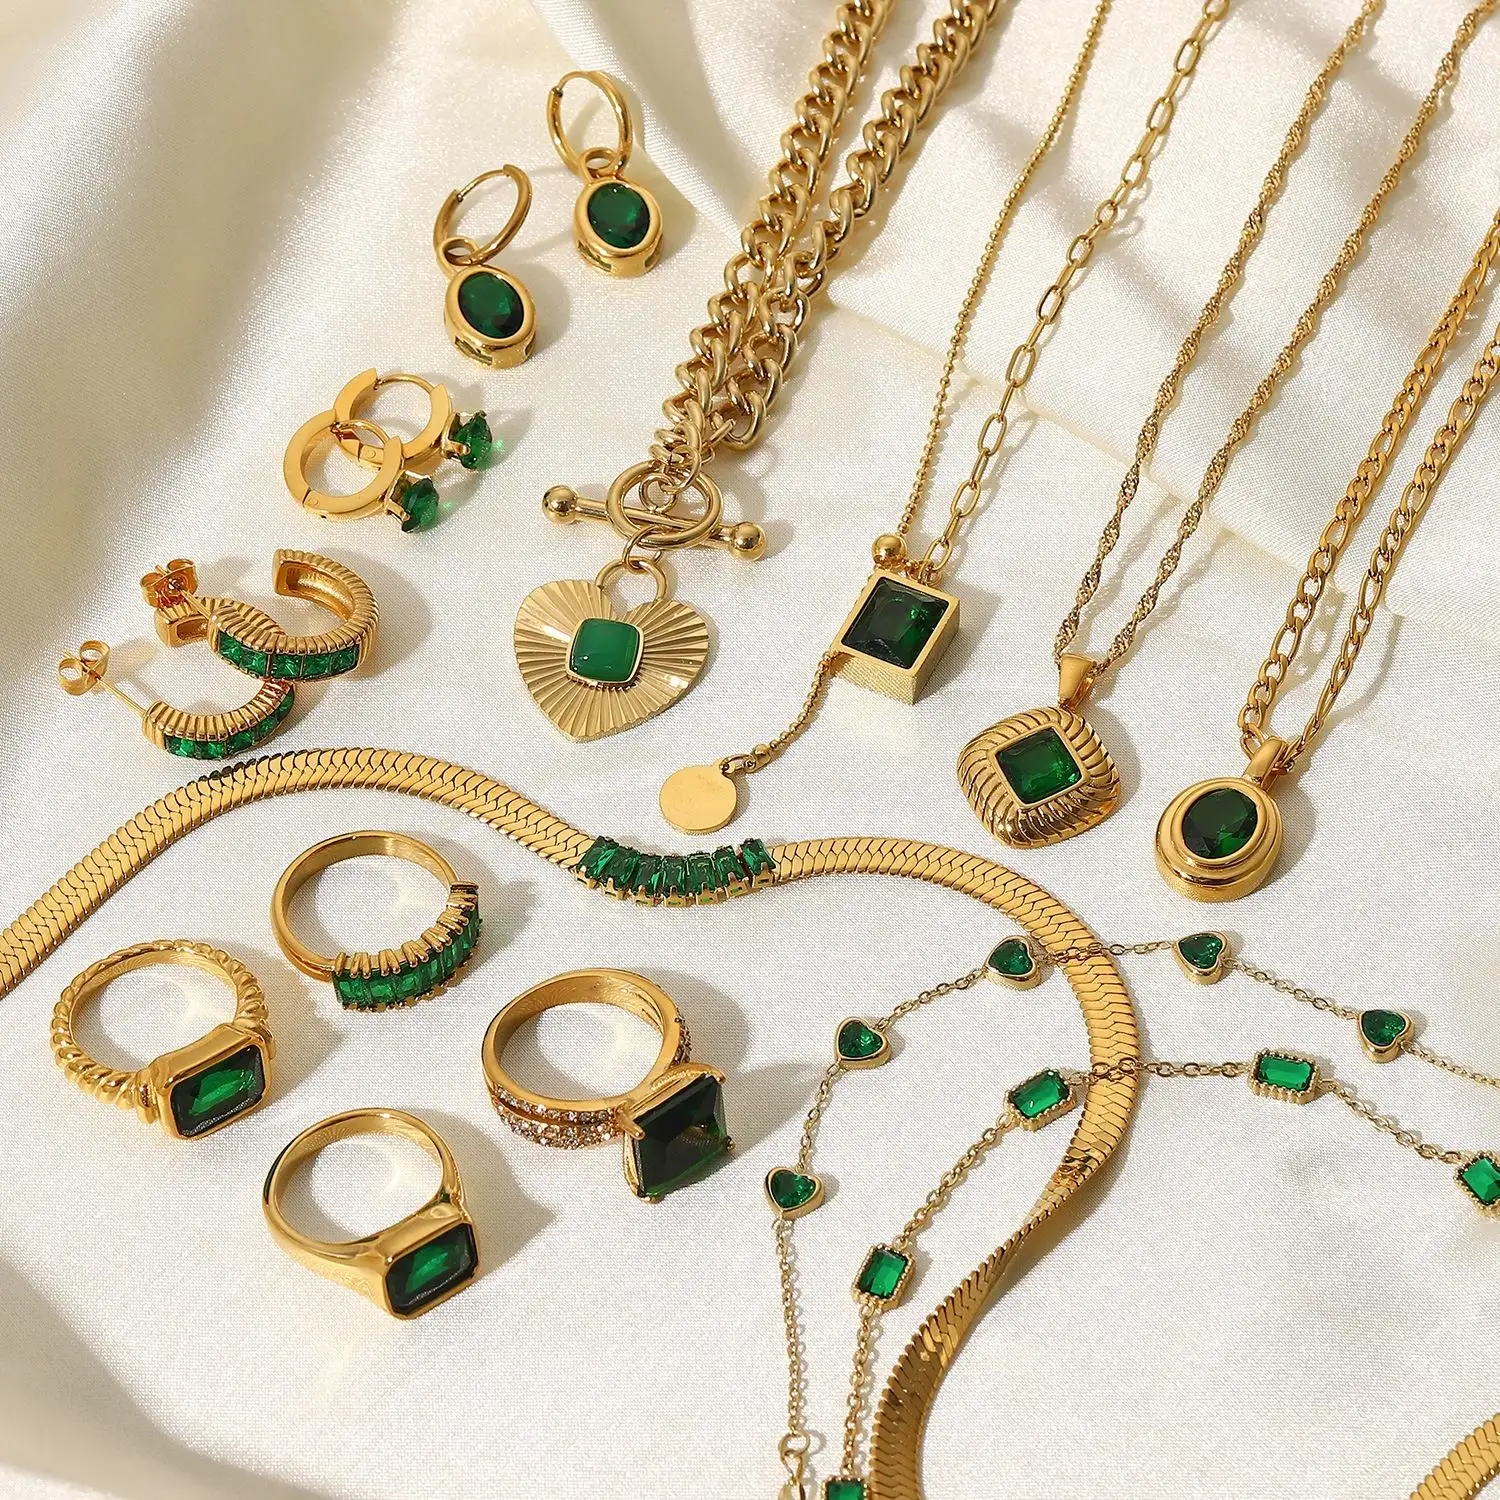 Lefeng Natural Smaragd Drop Hoepel Oorbellen Ringen Verguld Malachiet Ketting Rvs Mode Sieraden Sets Voor Vrouwen